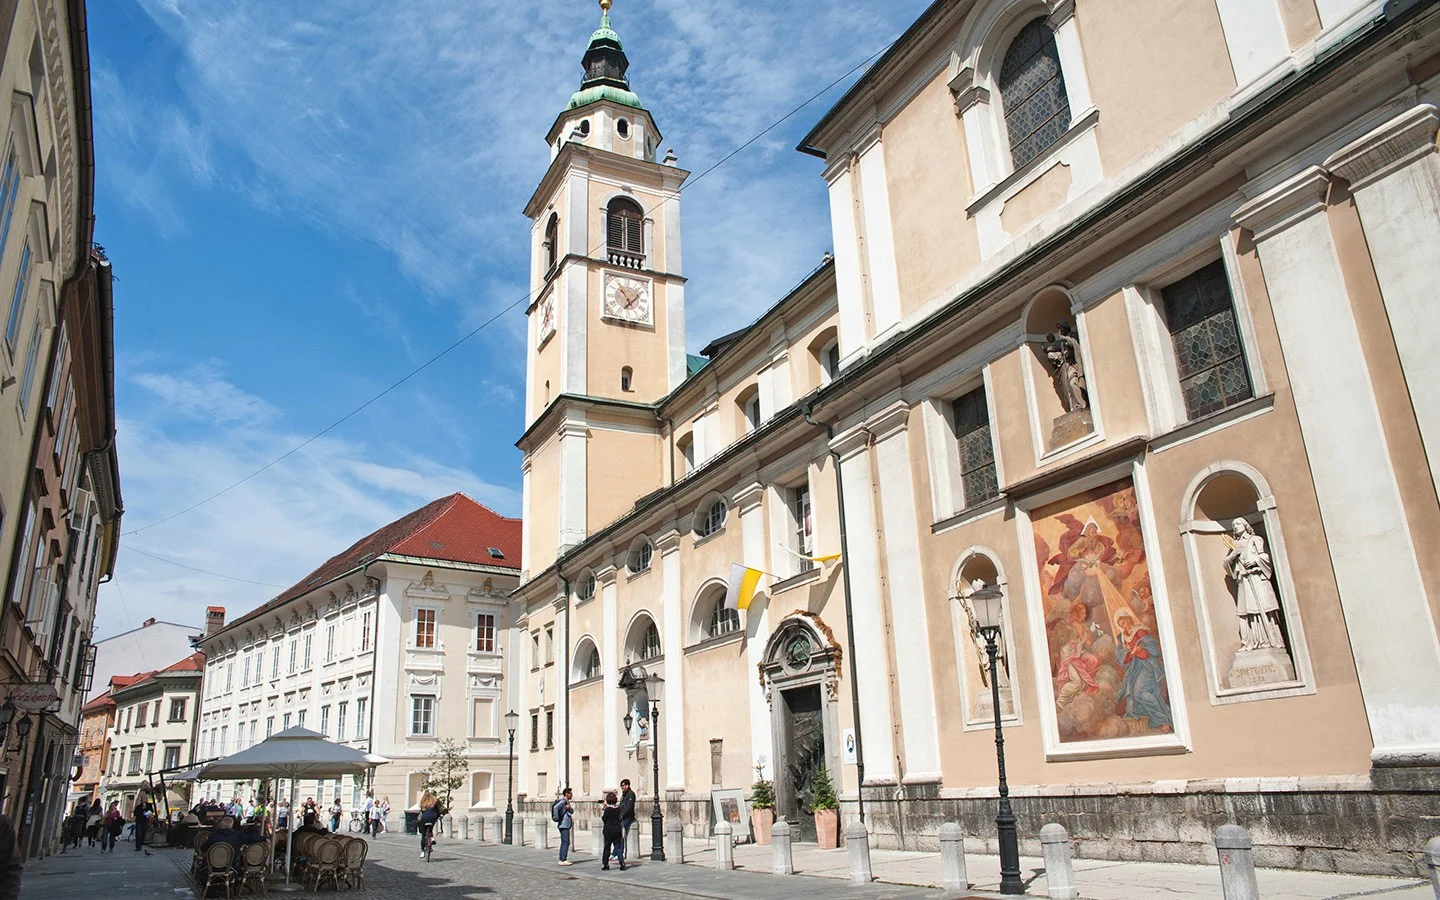 Old town Ljubljana, Slovenia